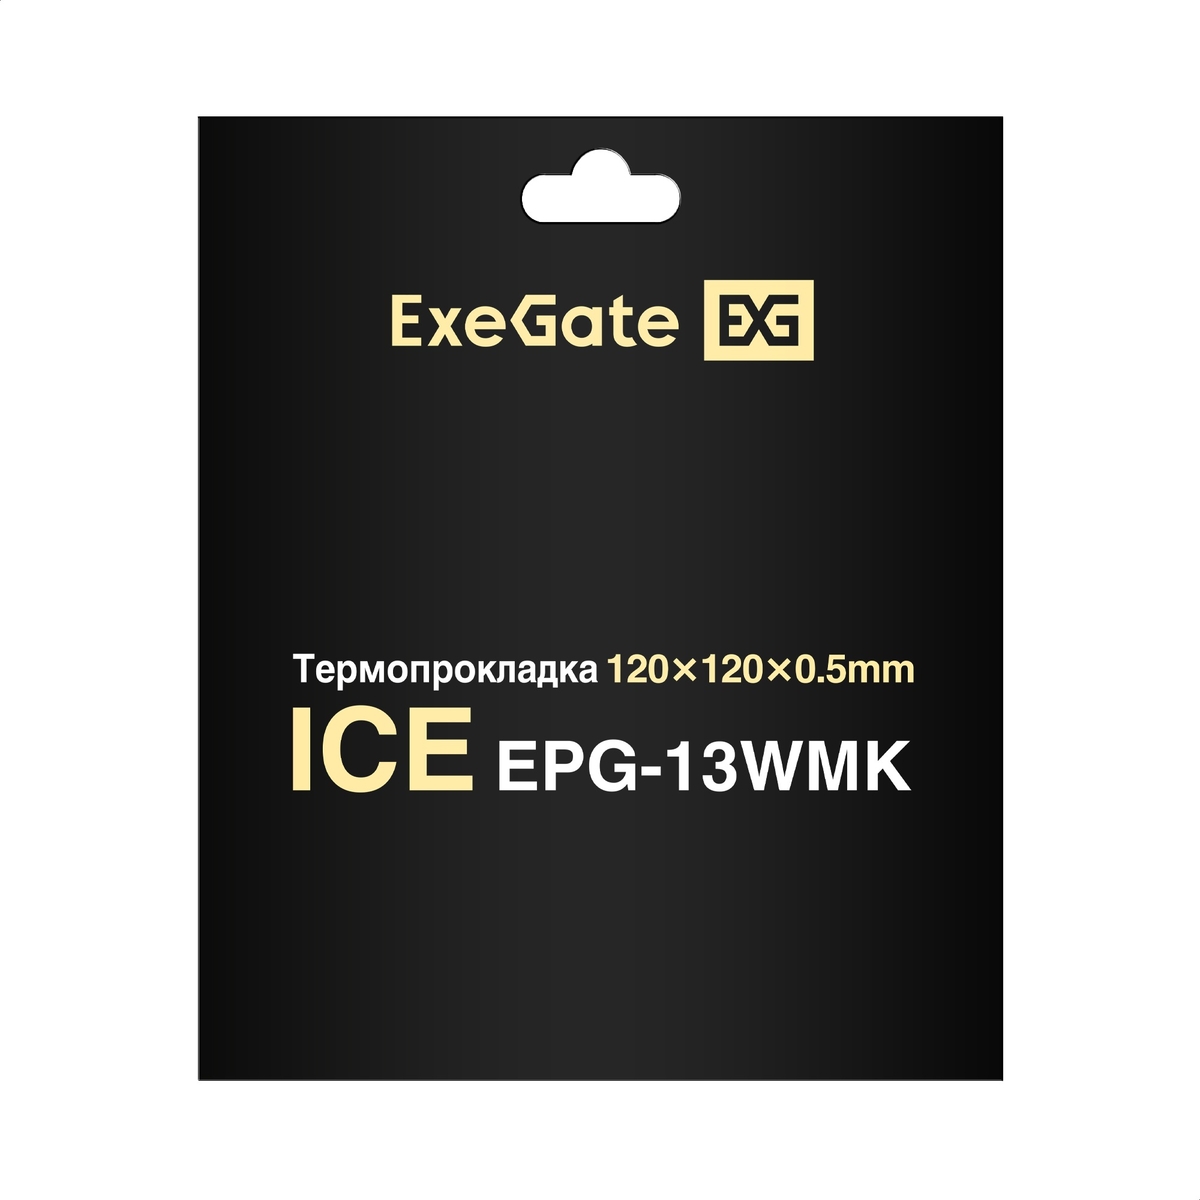 Thermal Pad ExeGate Ice EPG-13WMK 120x120x0.5